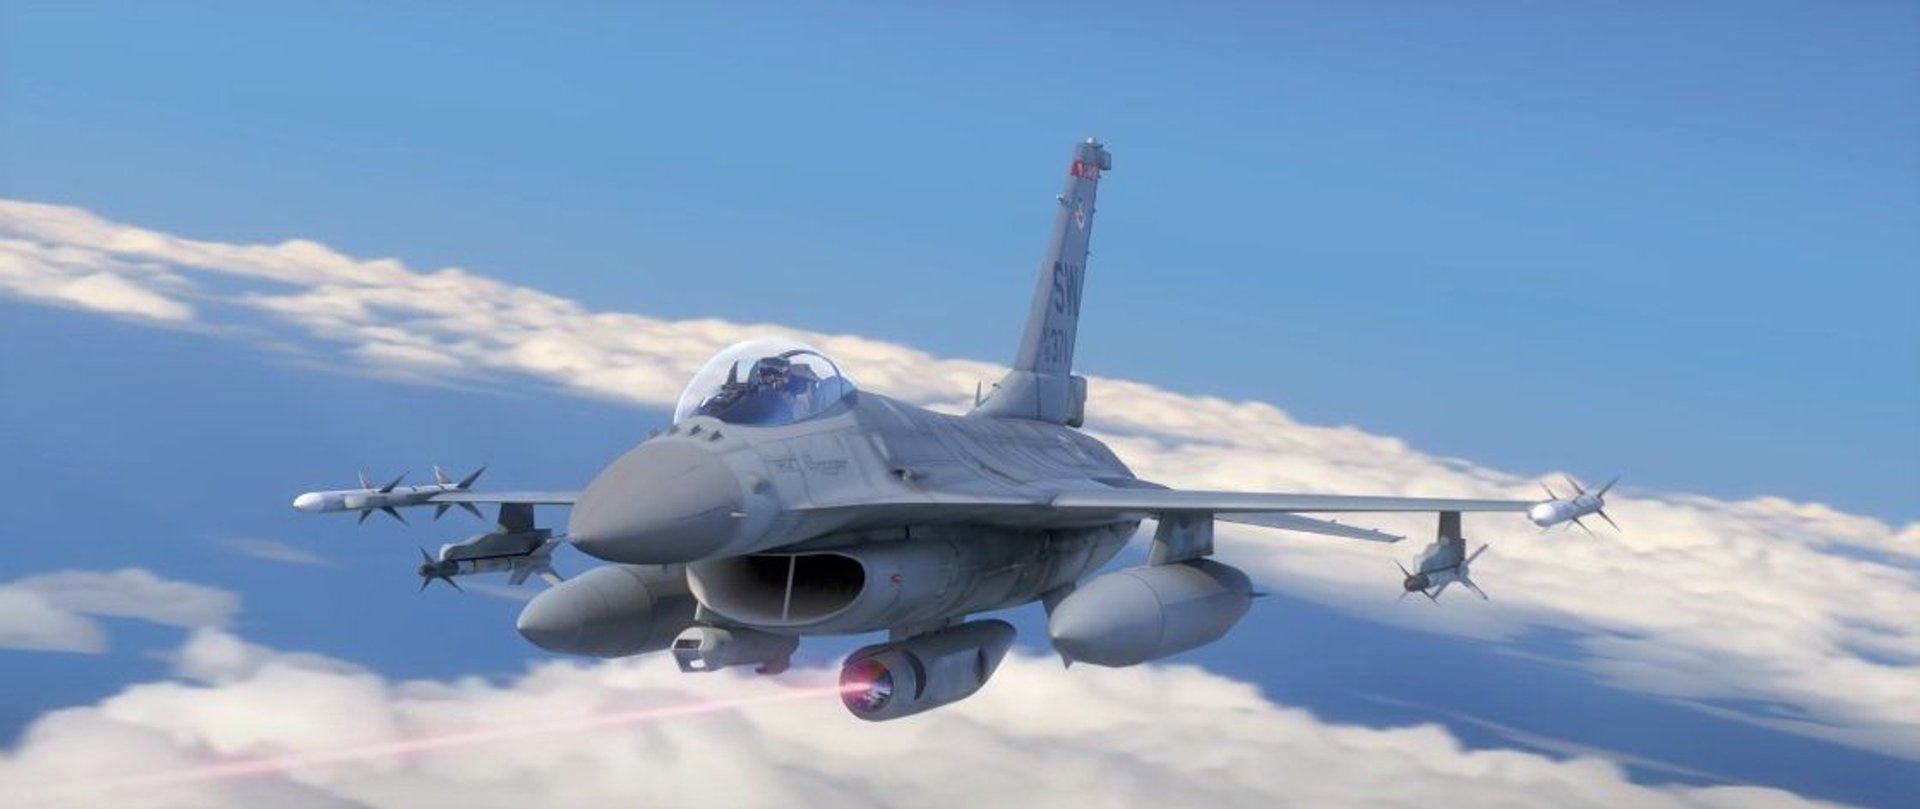 Animacja przedstawiająca działanie systemu laserowego w amerykańskich myśliwcach.